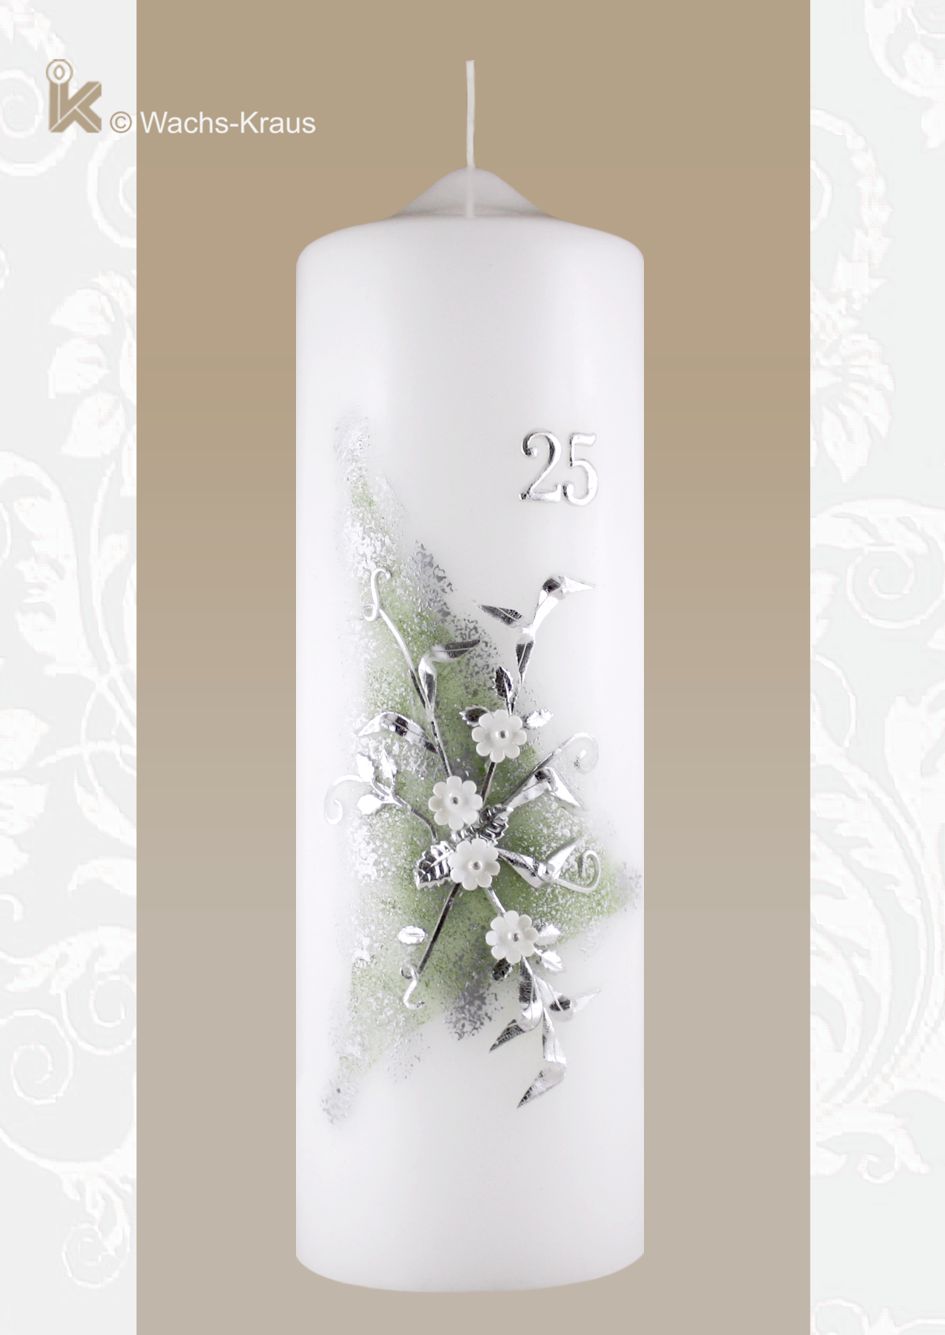 Kerze zur Silberhochzeit. Geschmackvoll und sehr fein gearbeitet ist diese Kerze zum 25-jährigen Ehejubiläum mit weißem Blumenstrauß.